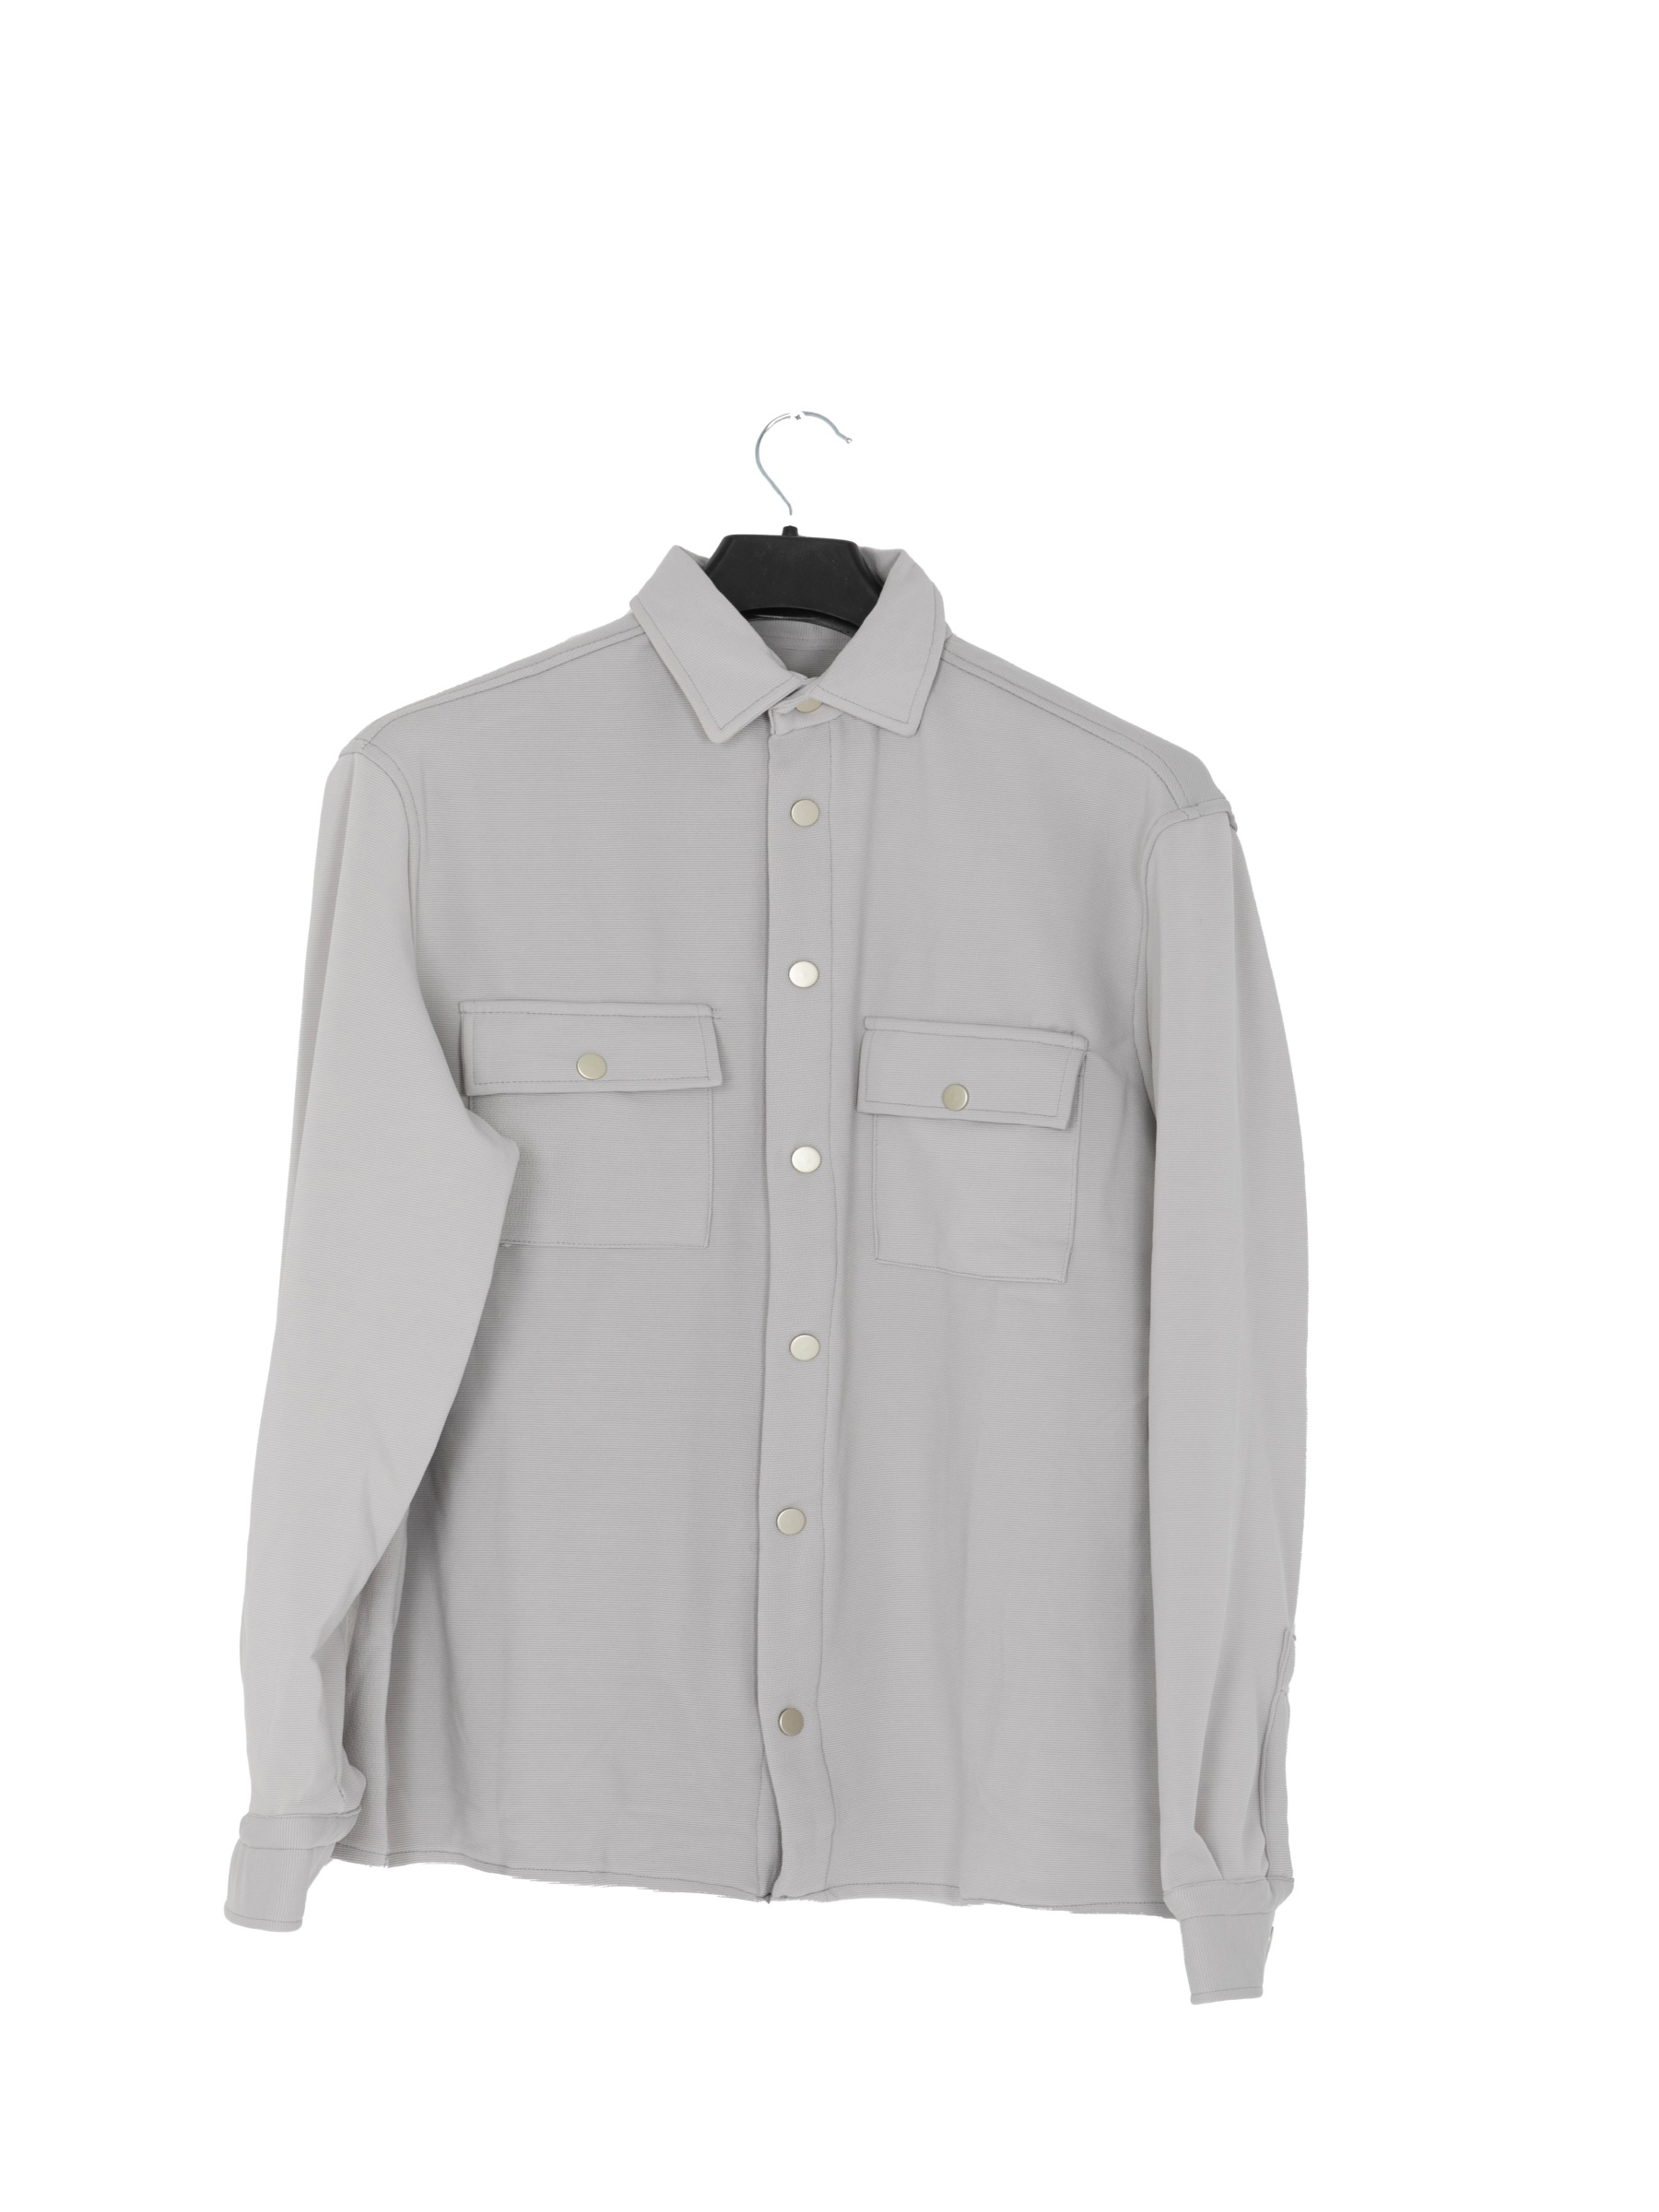 Overhemd Lange Mouw 2094 Grey-S